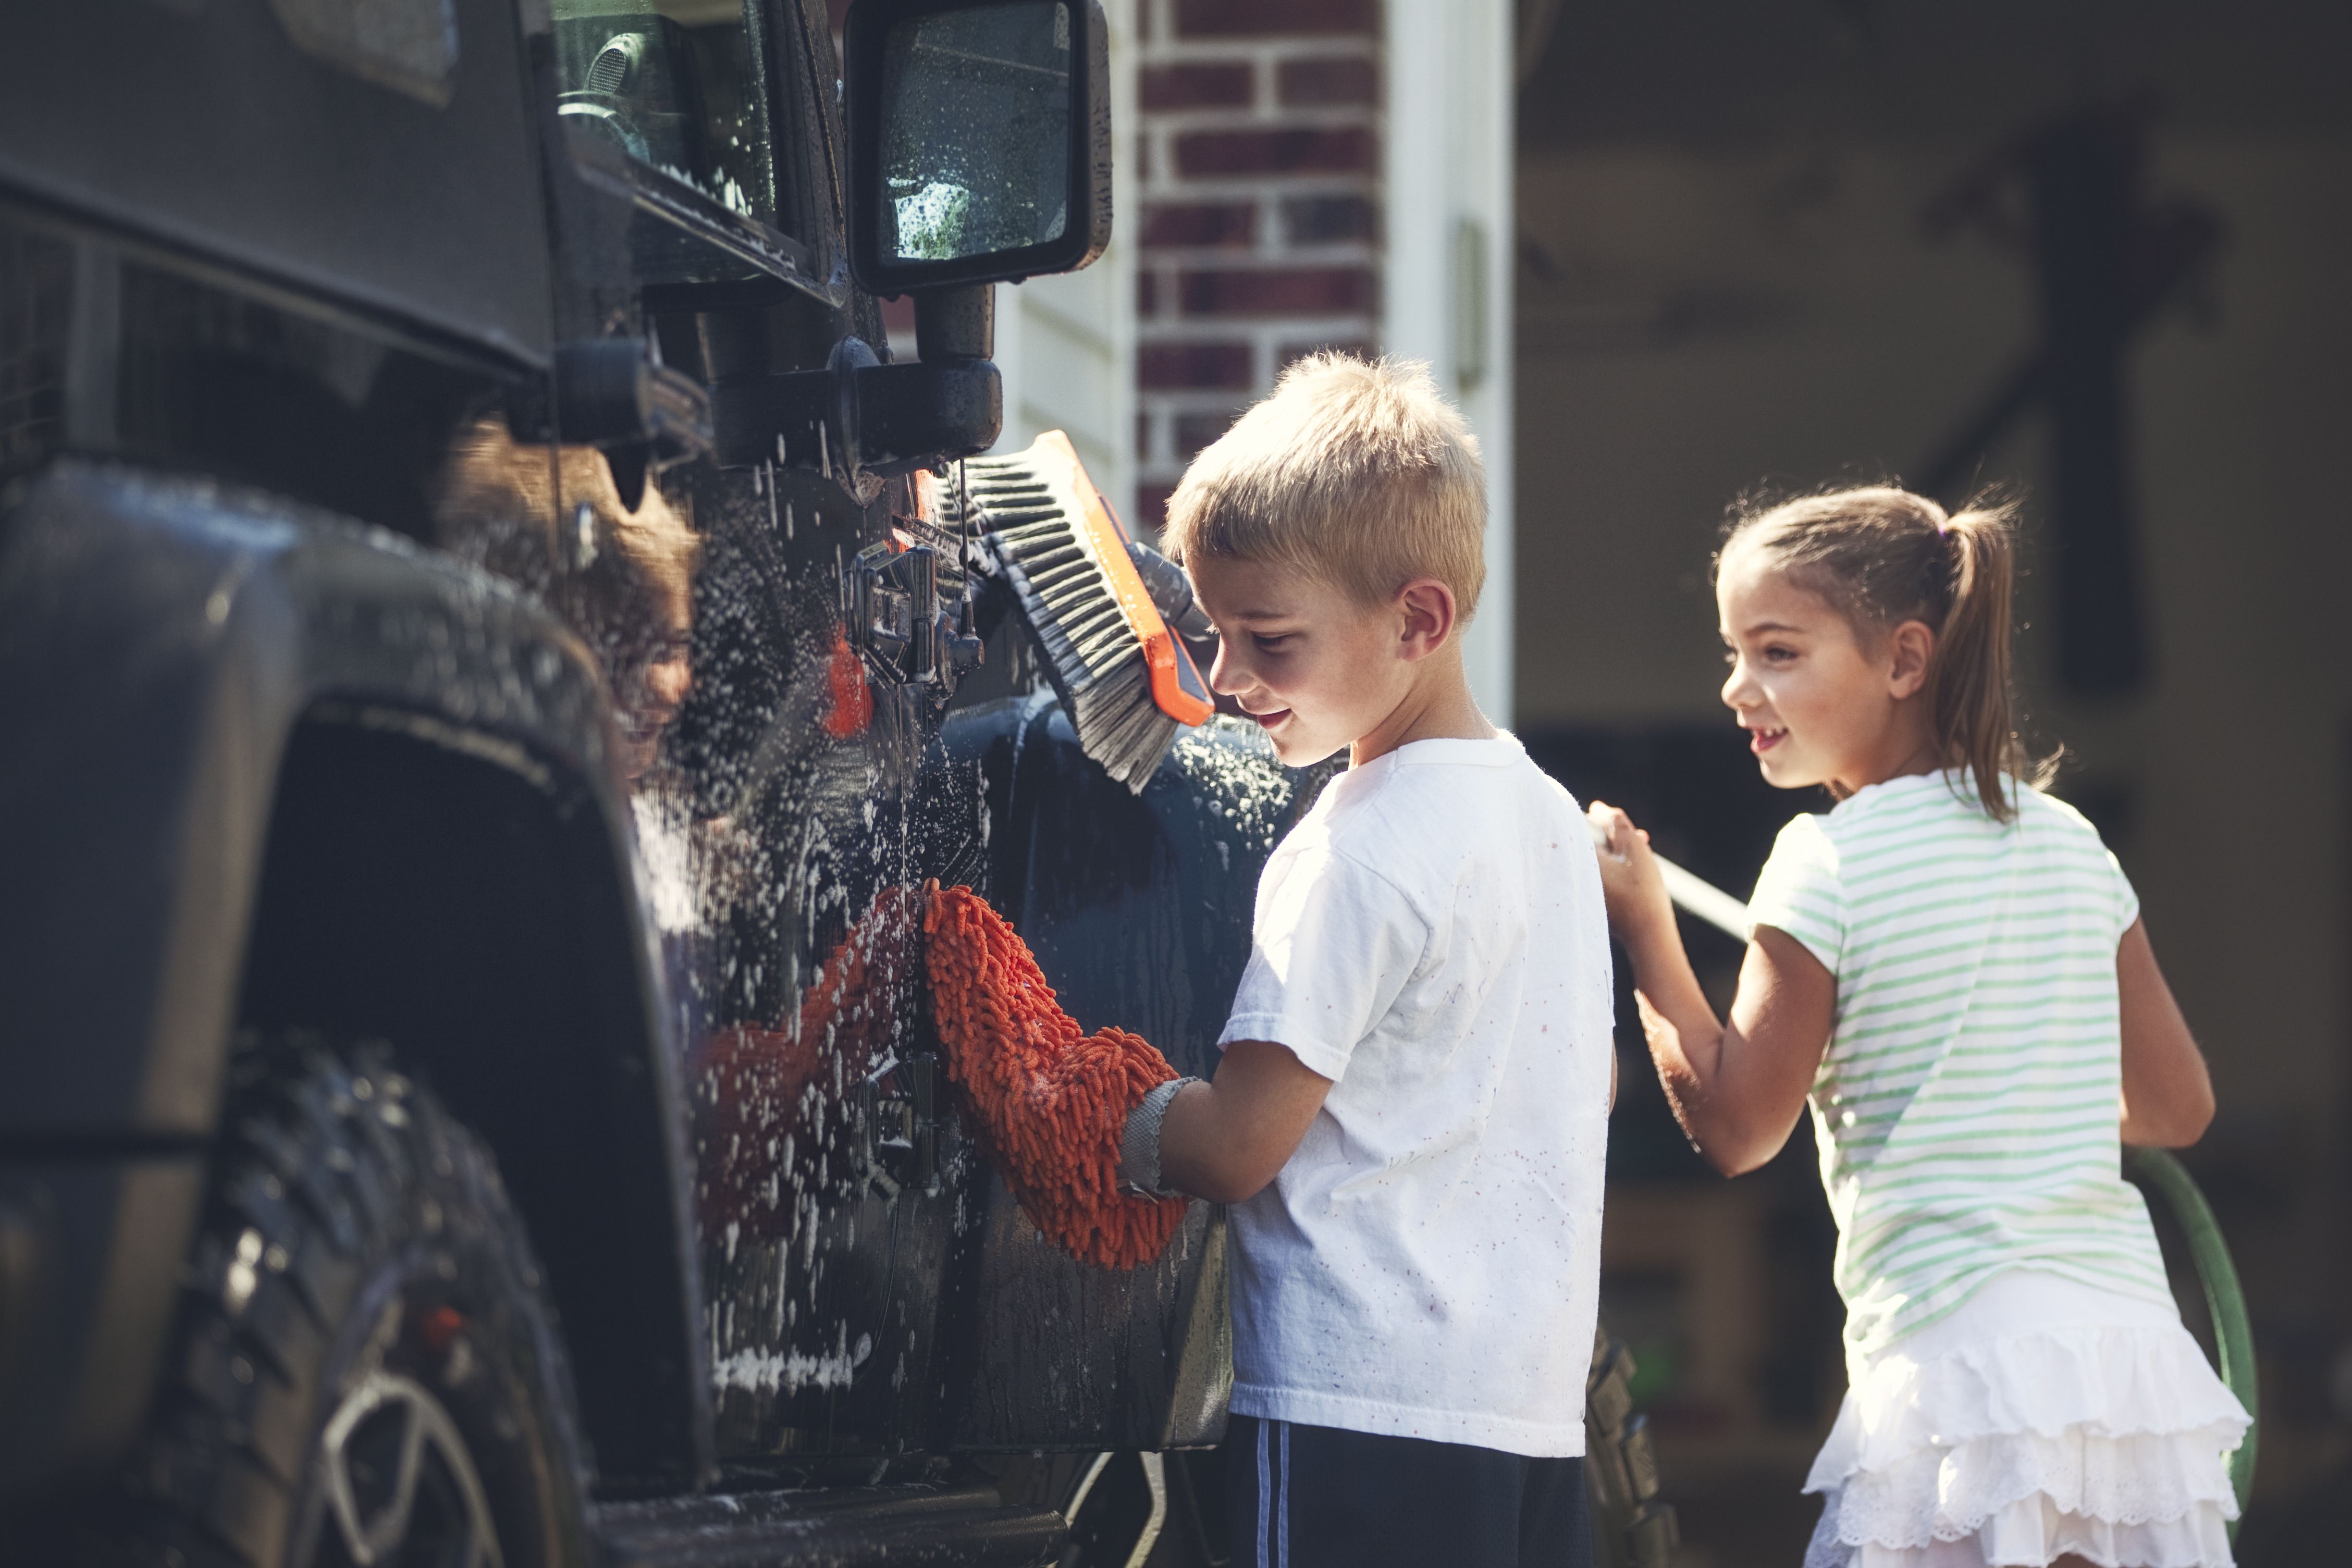 洗車道具おすすめ10選。バケツやタオルなど便利な洗車グッズを紹介